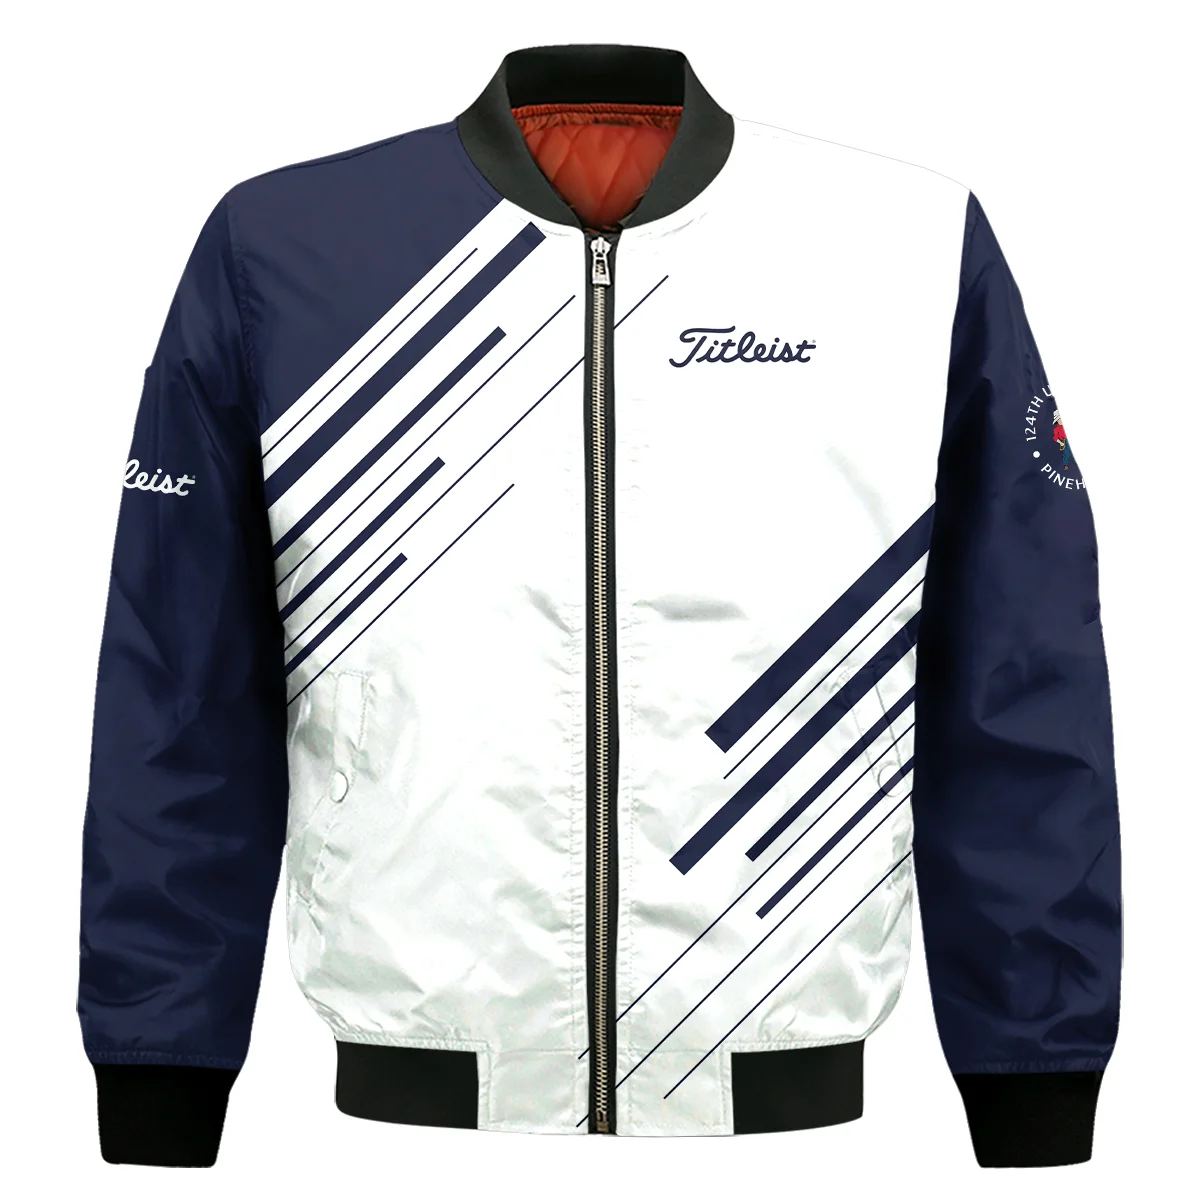 Titleist 124th U.S. Open Pinehurst Golf Bomber Jacket Striped Pattern Dark Blue White All Over Print Bomber Jacket